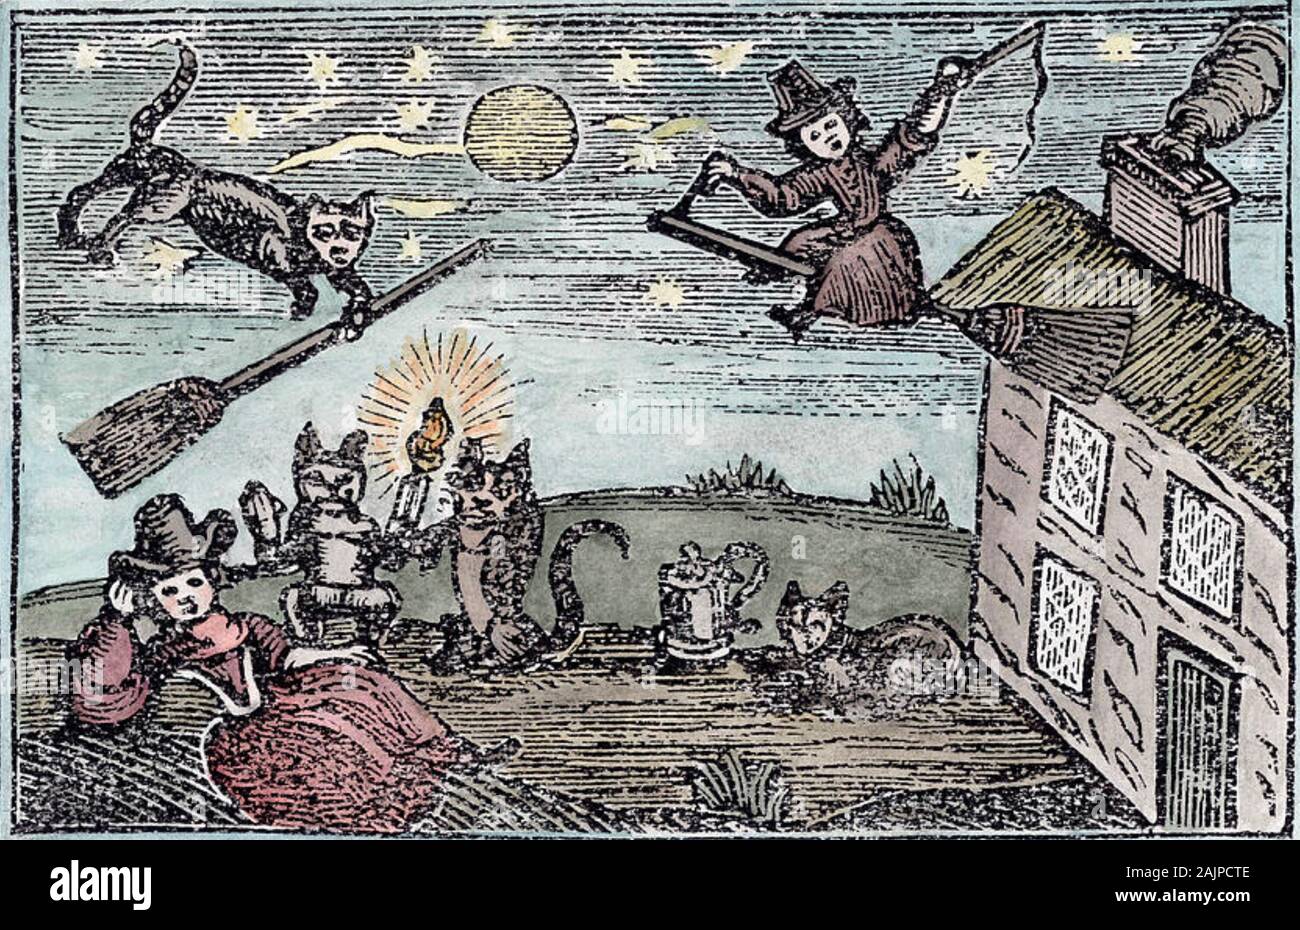 Les sorcières avec leurs familiers dans une gravure sur bois de 1600 Banque D'Images